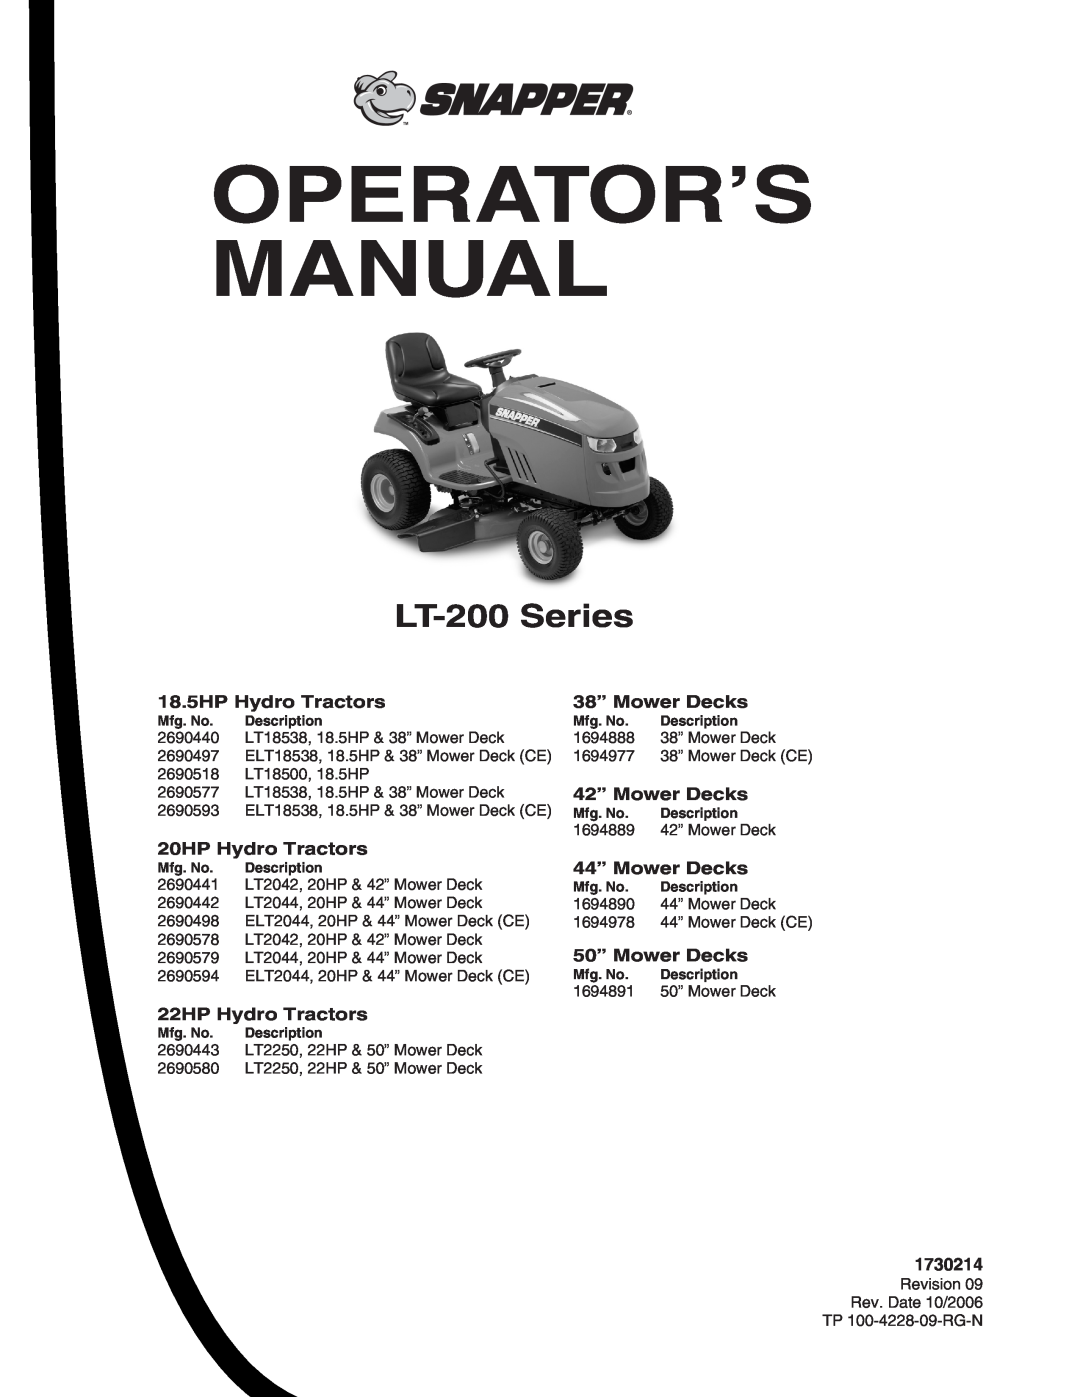 Snapper manual LT-200 Series, Operator’S Manual 